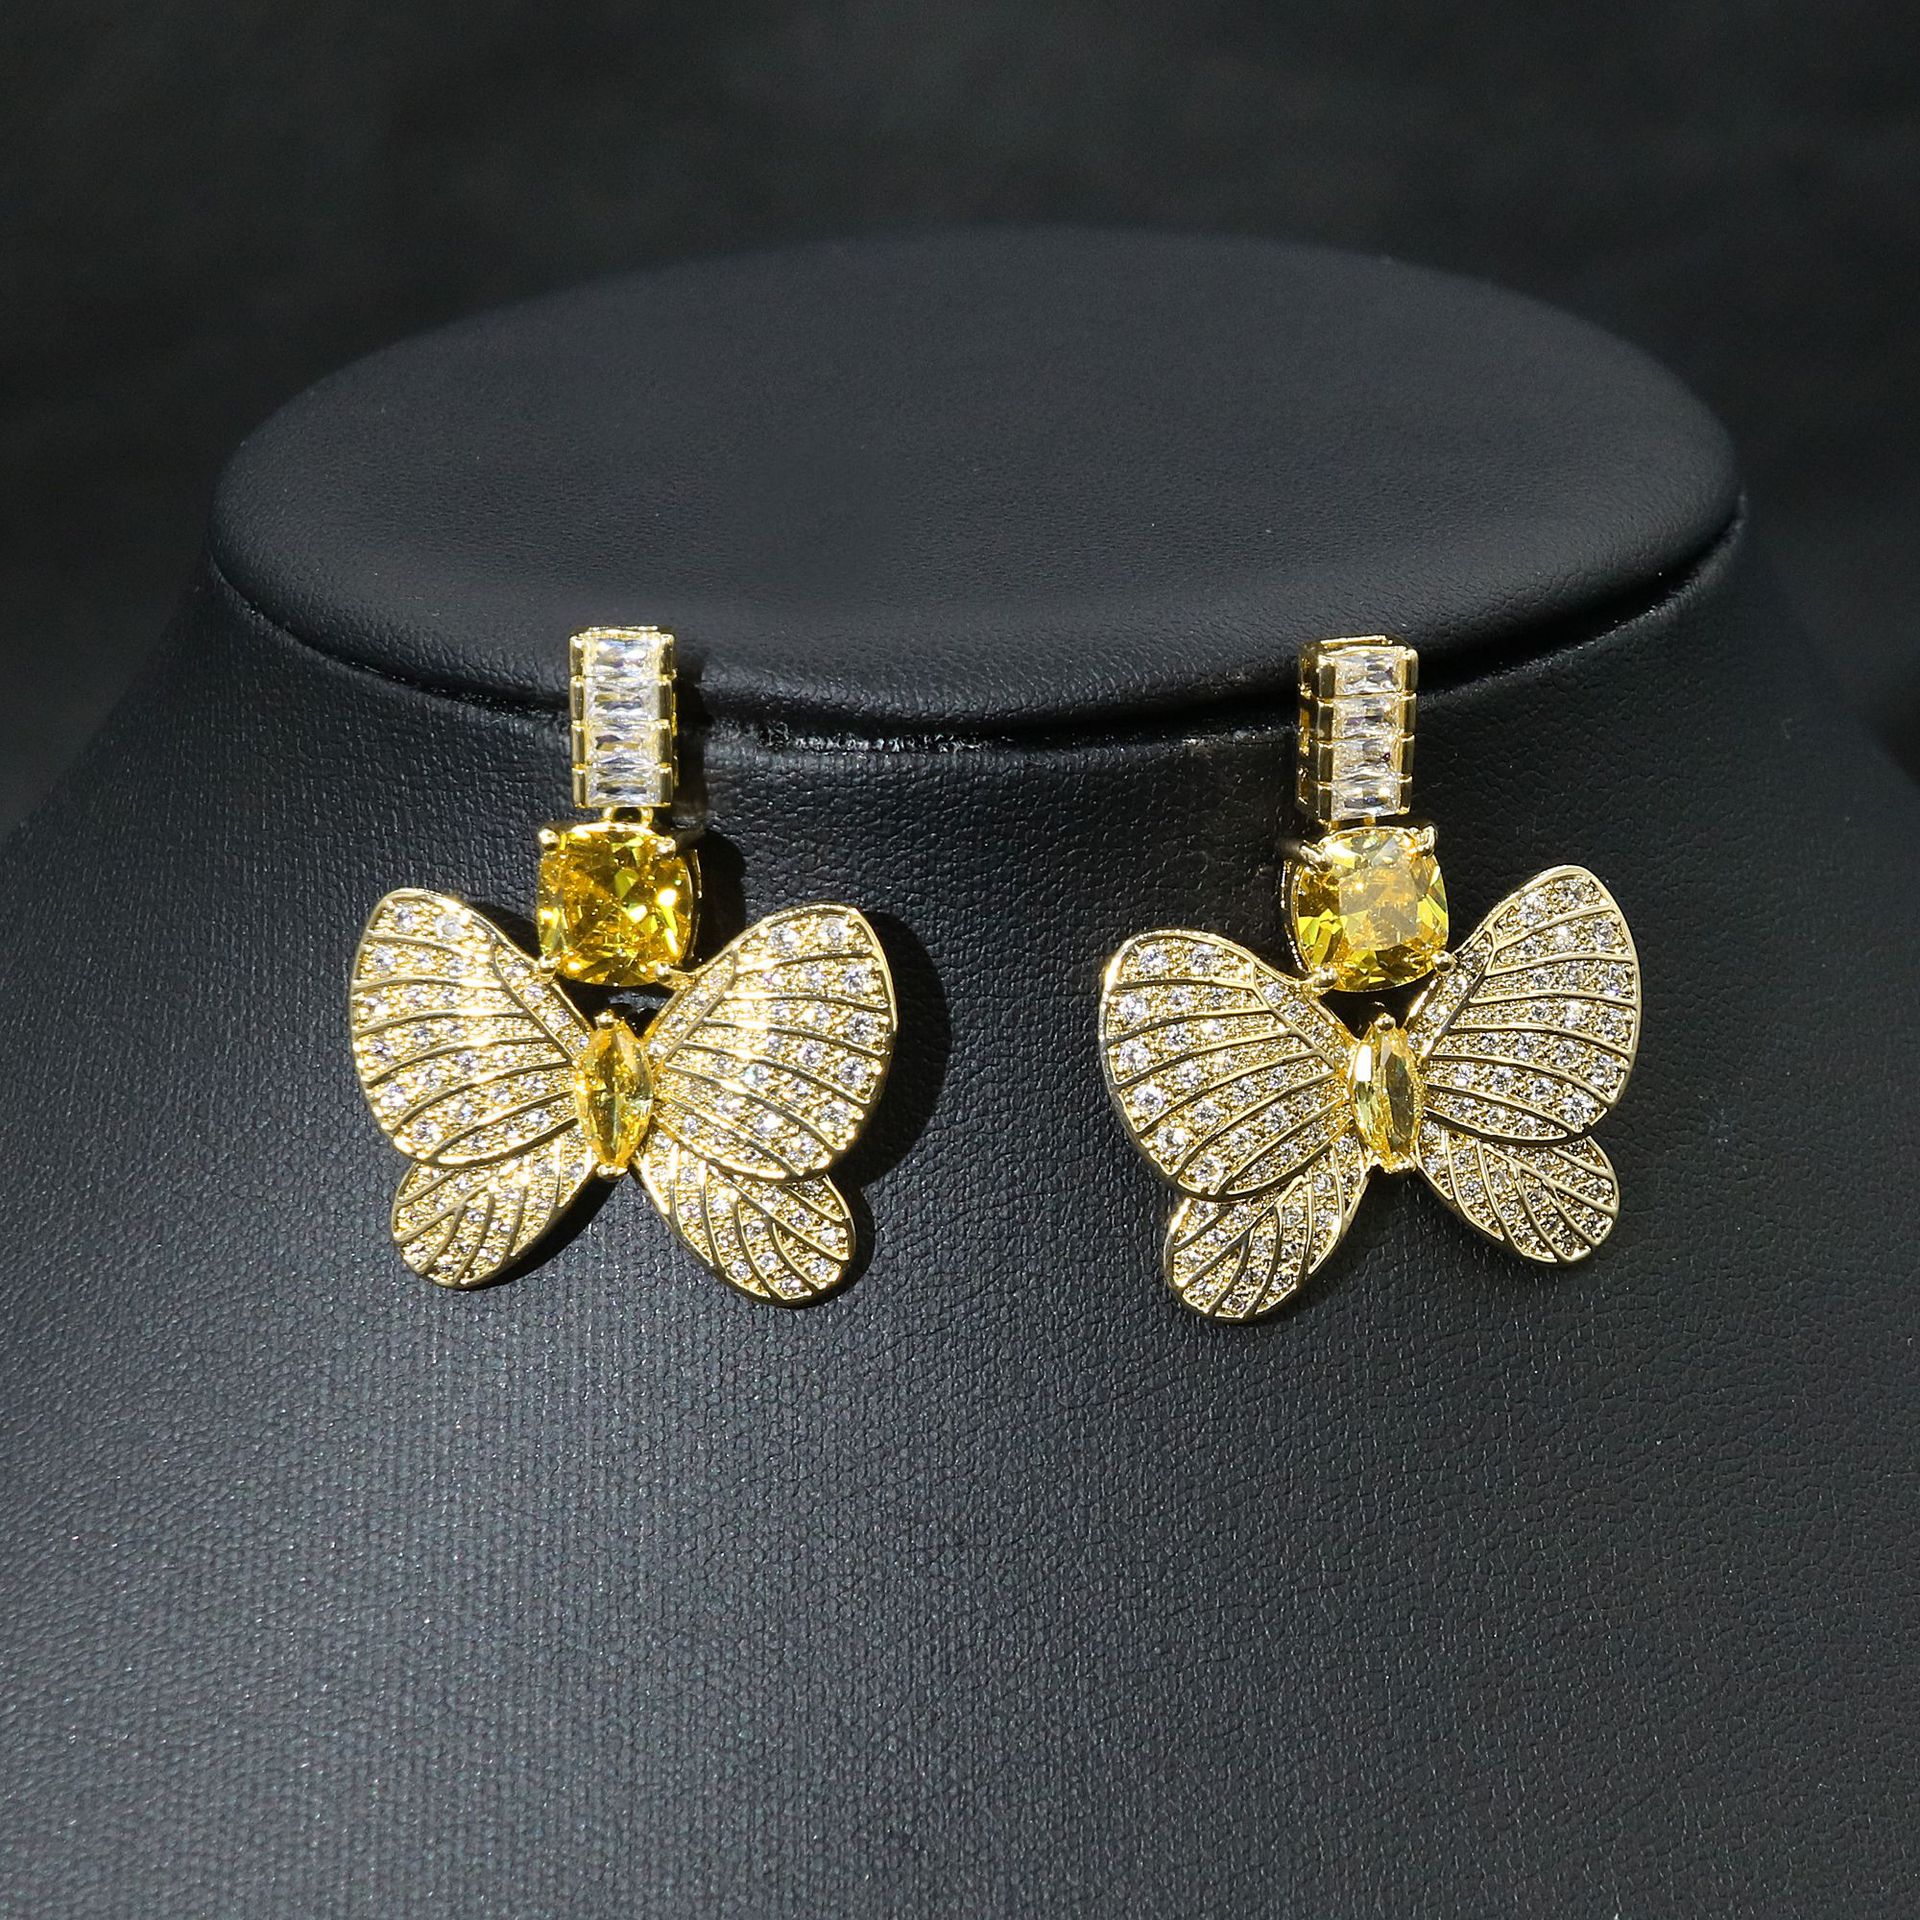 Yellow zirconium earrings in gold